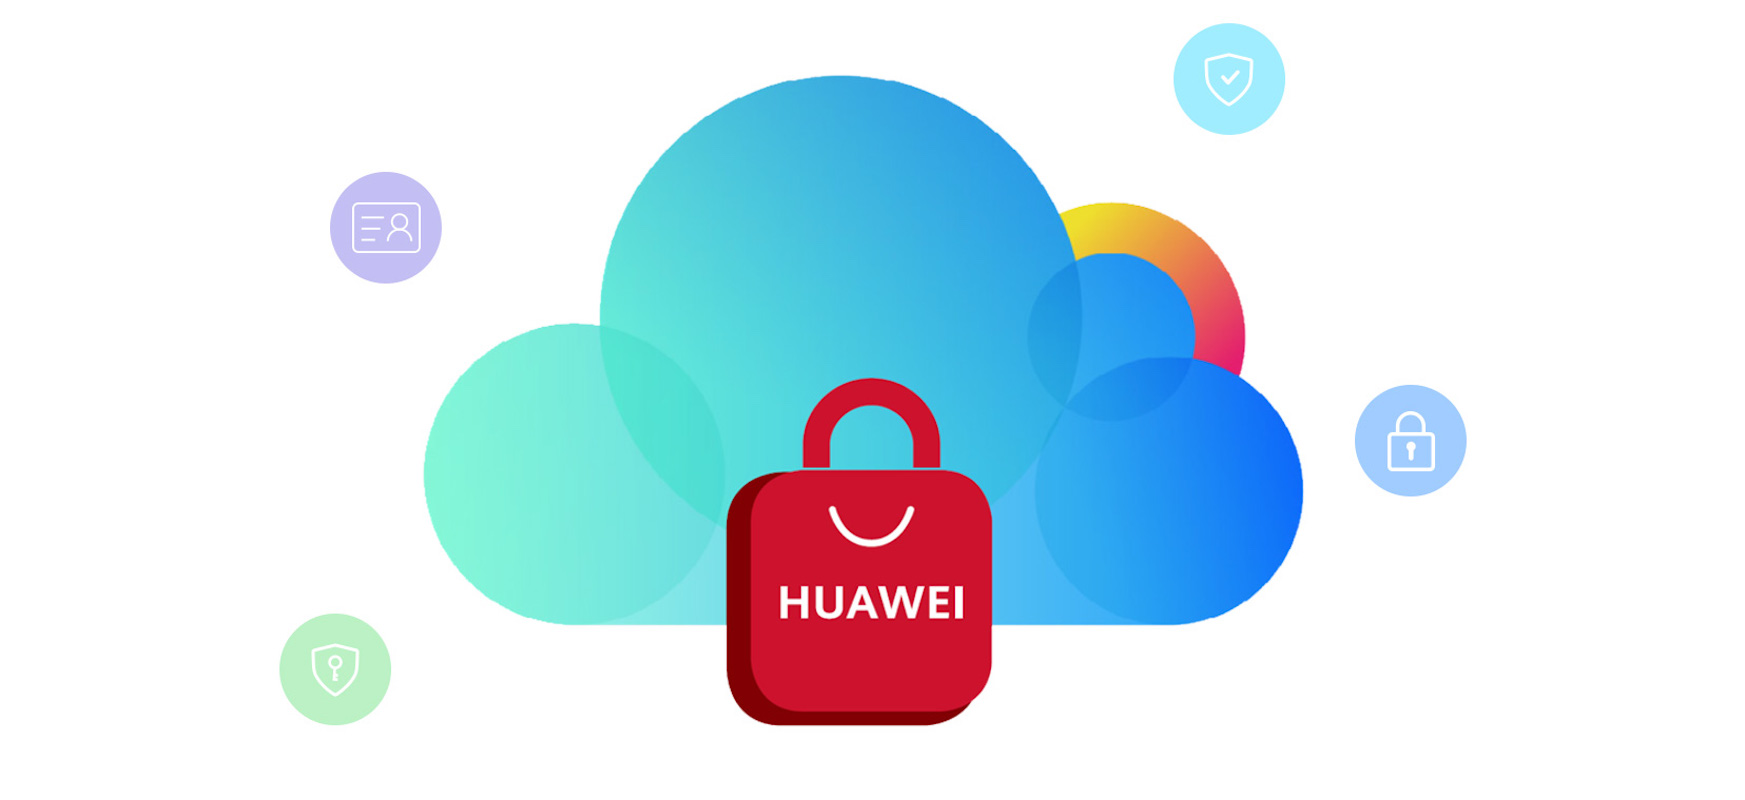 # Egin etxean Huawei telefonoarekin. 5 Huawei AppGallery-ren aplikazio interesgarriak quarantena egiteko garaian
